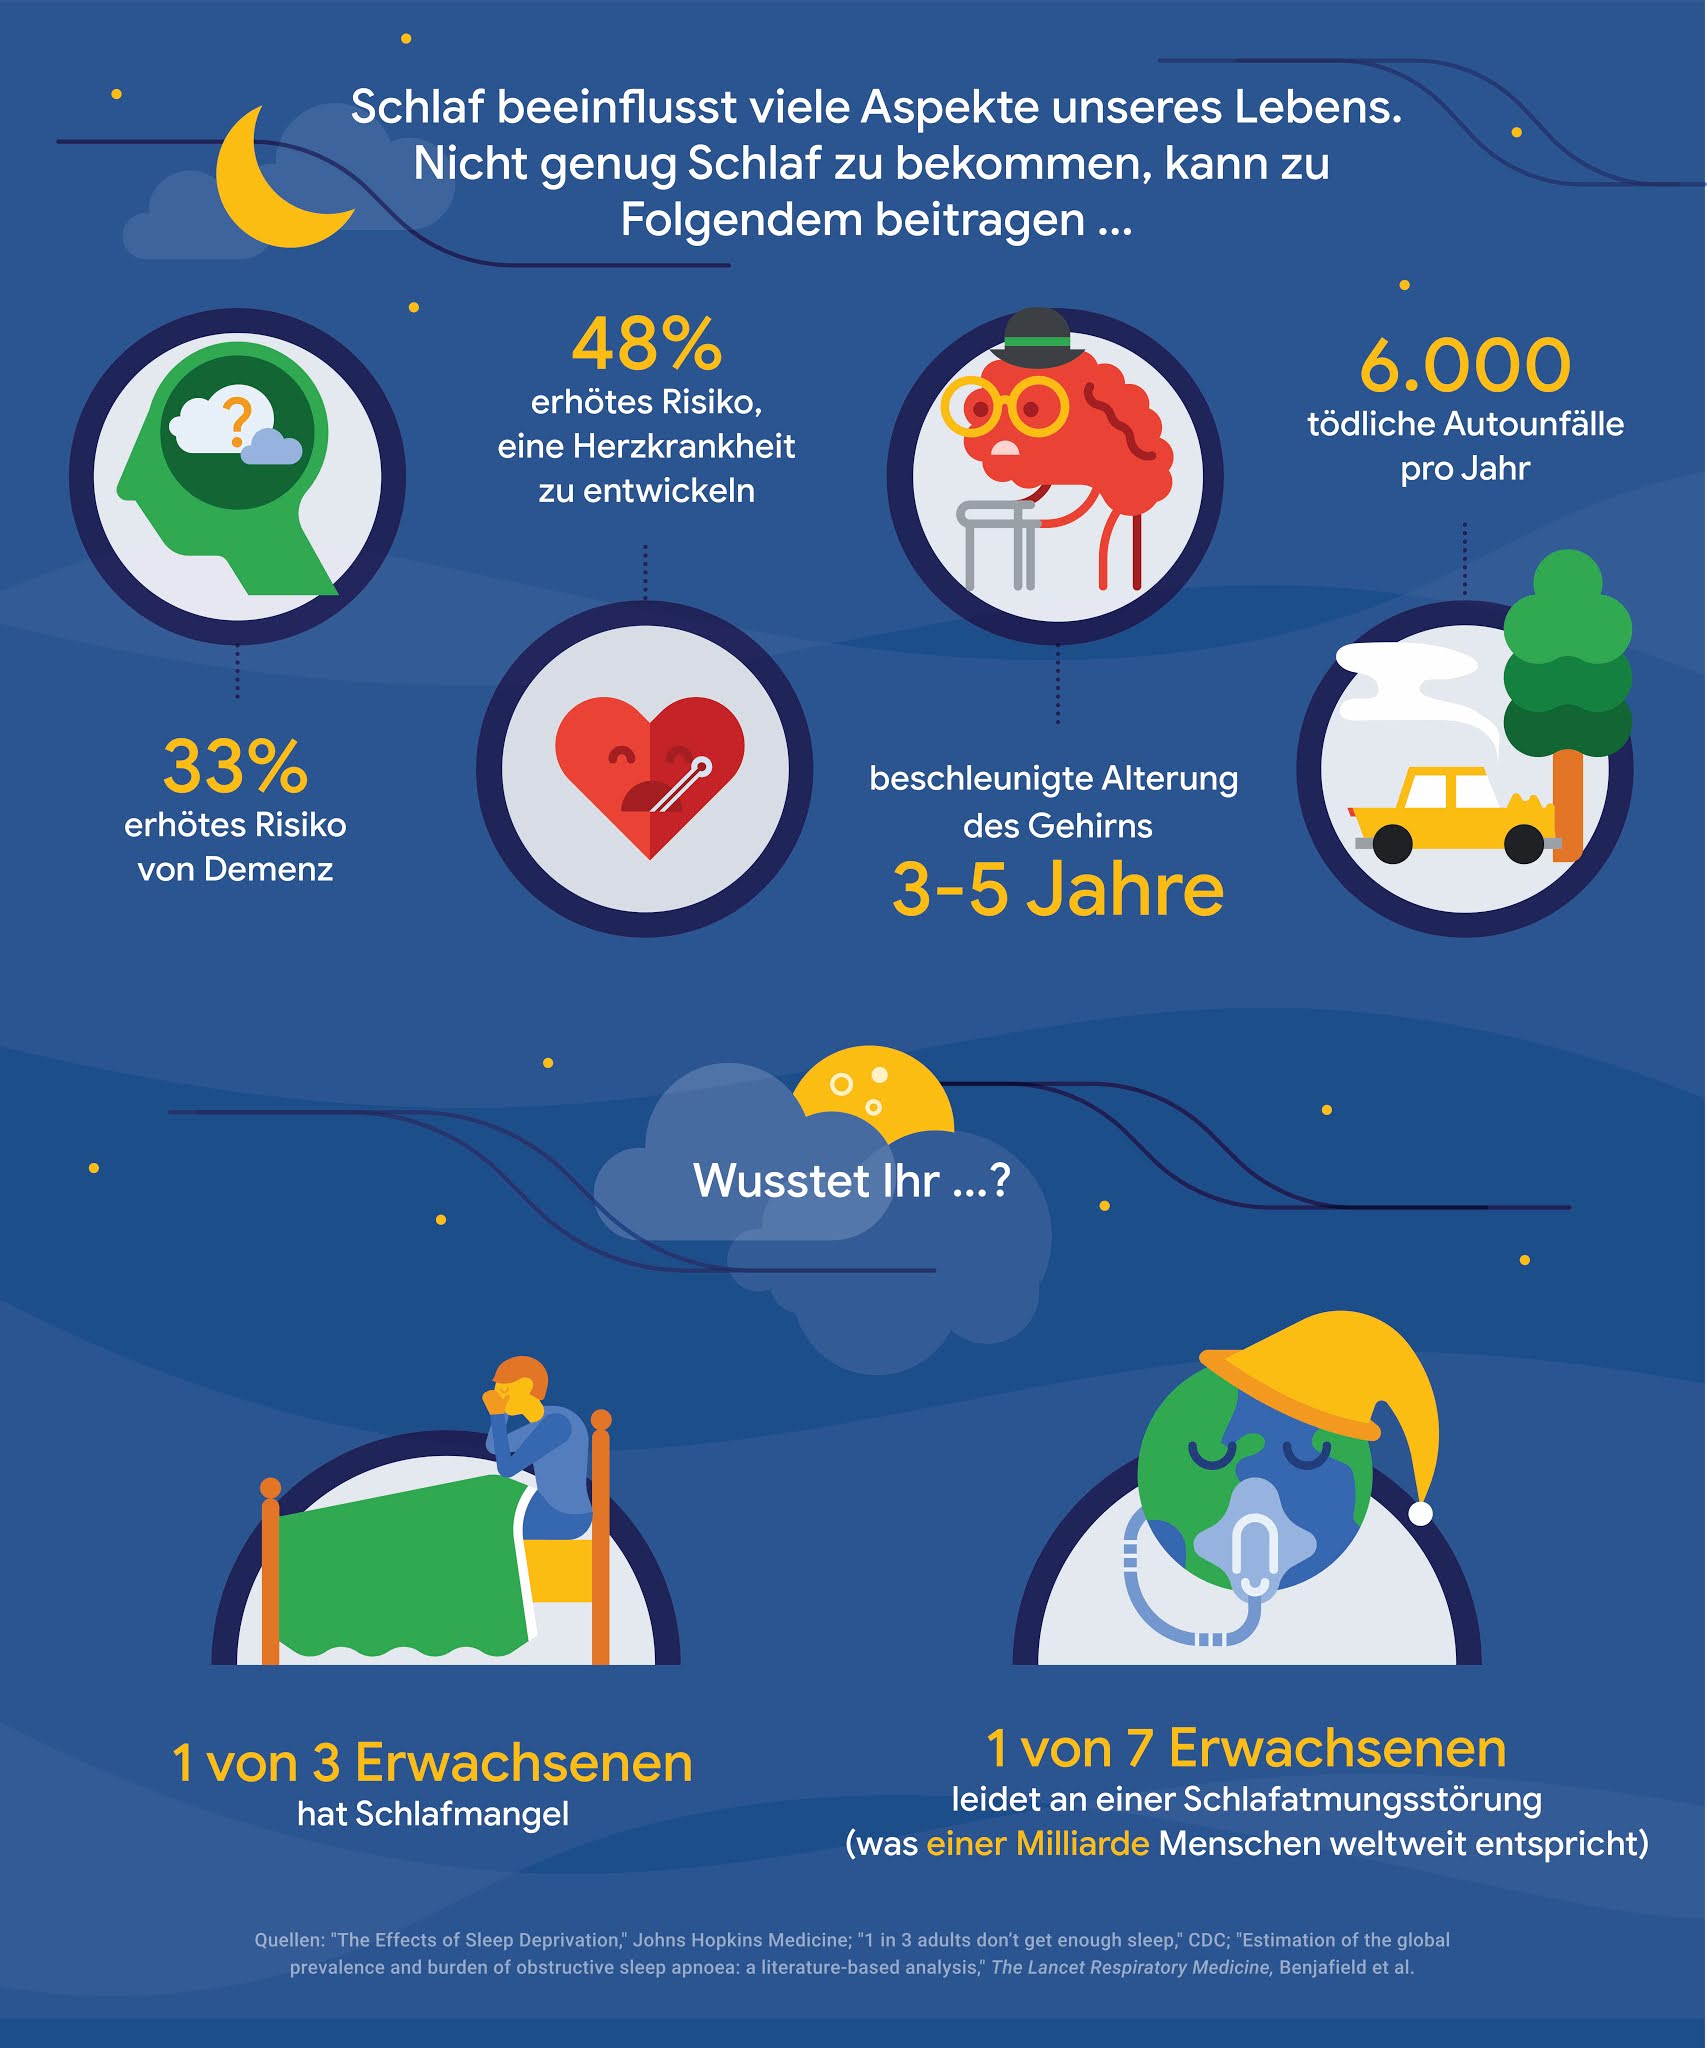 Eine Infografik über die Ergebnisse einer Schlafstudie